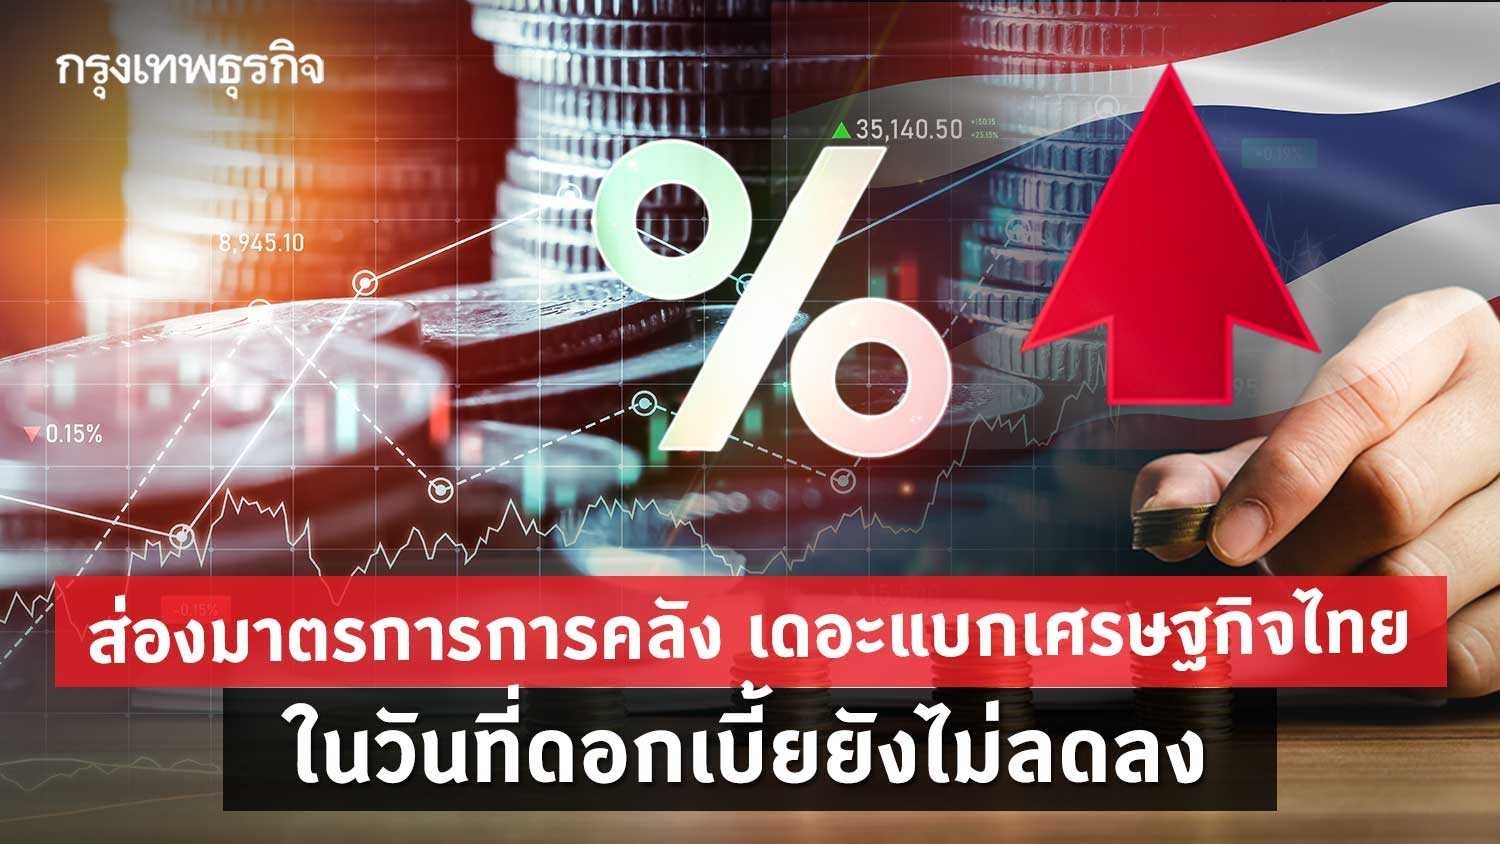 ส่อง 'มาตรการการคลัง' เดอะแบกเศรษฐกิจไทย ในวันที่'ดอกเบี้ย'ยังไม่ลดลง